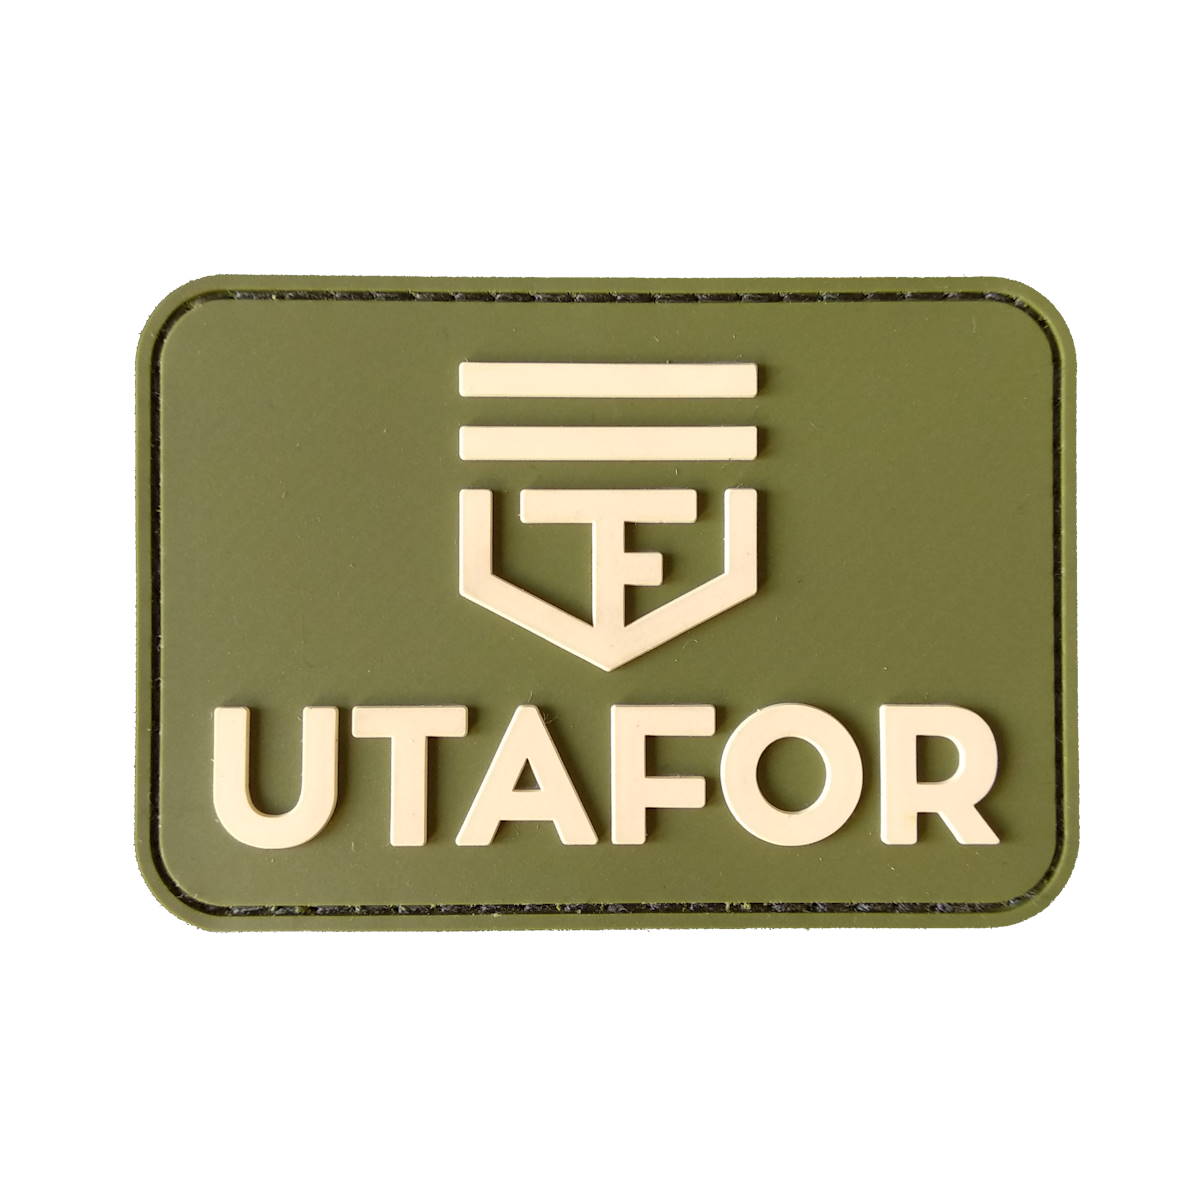 UTAFOR Velcro patch "Utafor logo"